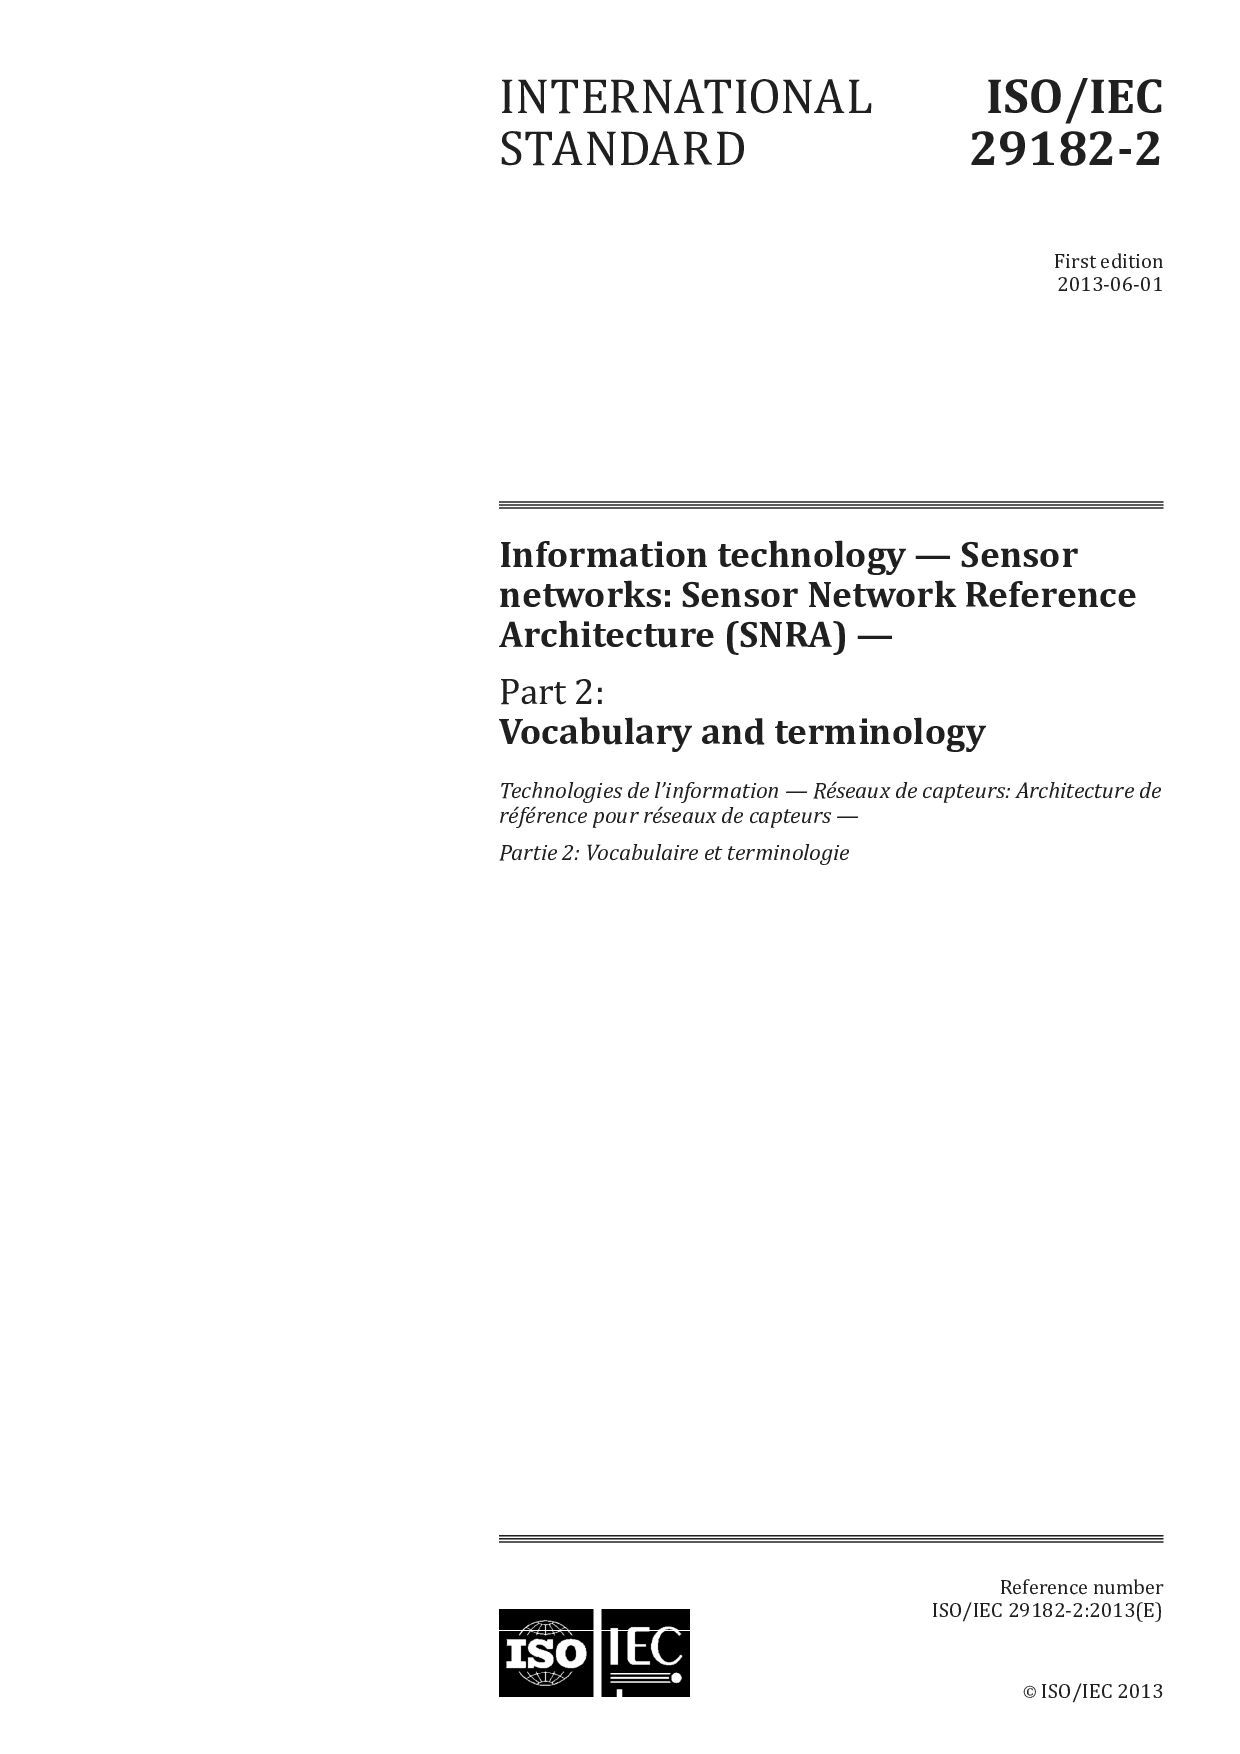 ISO/IEC 29182-2:2013封面图